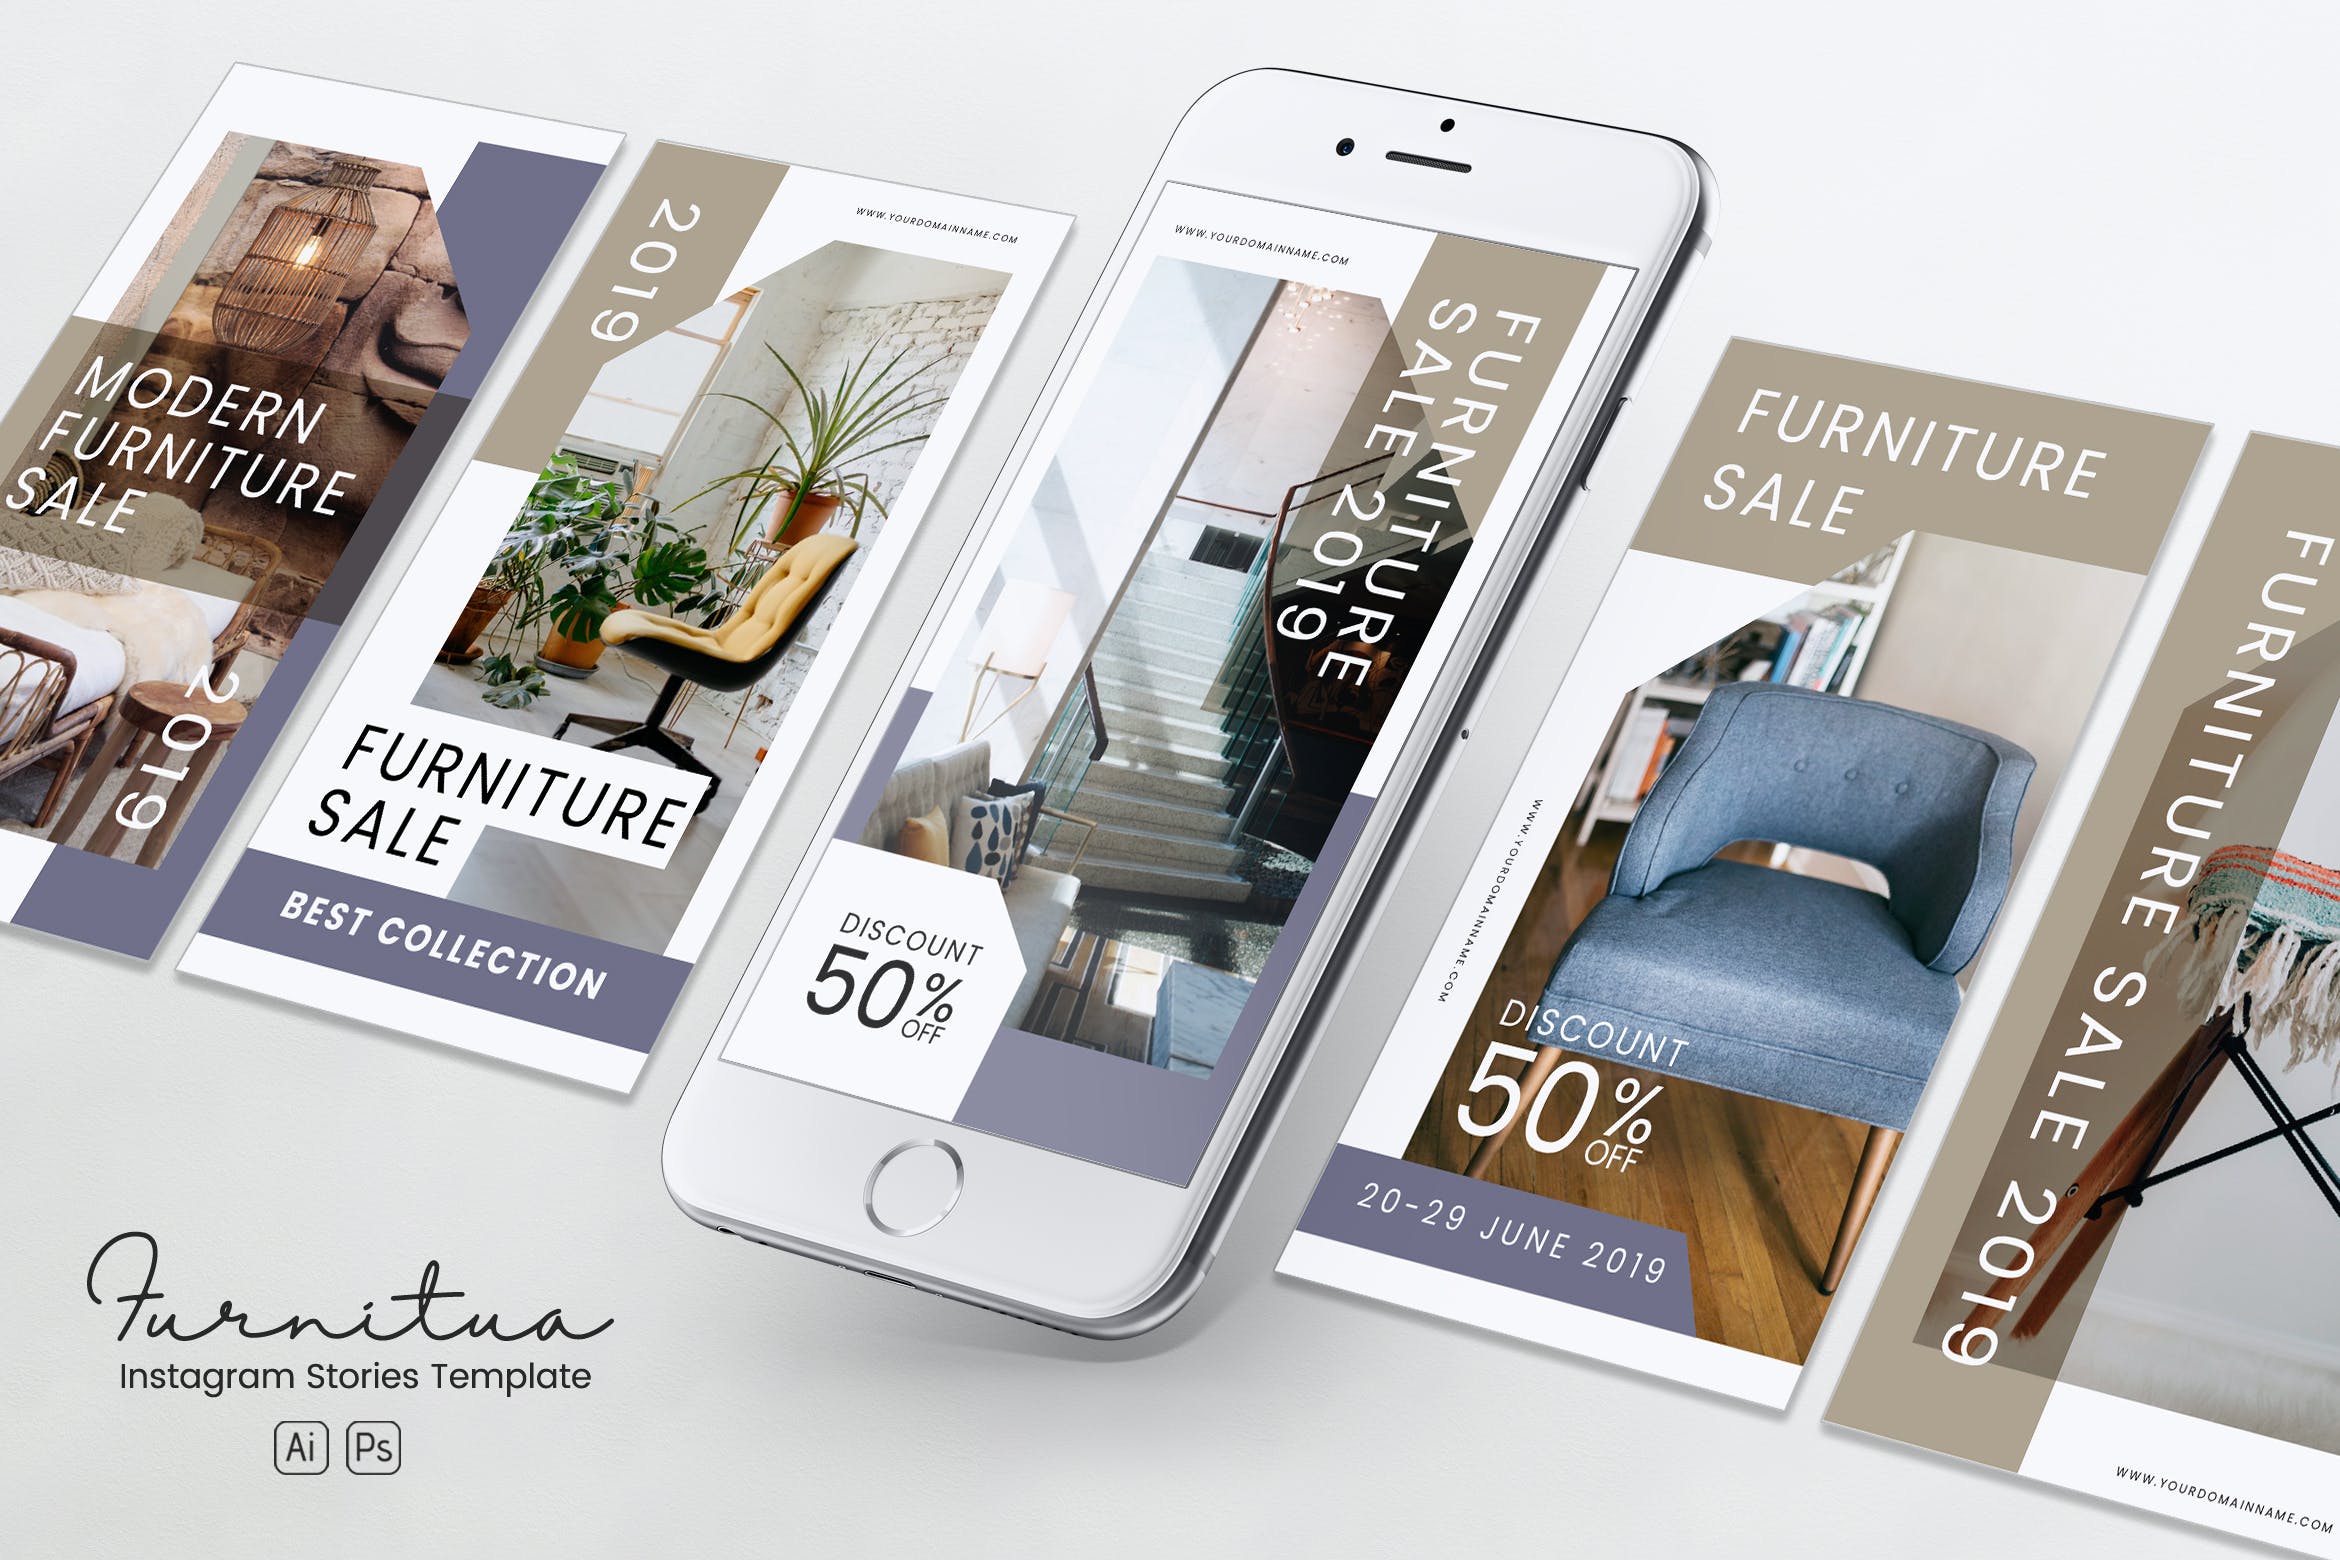 家具品牌故事推广Instagram社交推广设计素材PSD&AI模板素材库精选 Furniture Instagram Stories PSD & AI Template插图